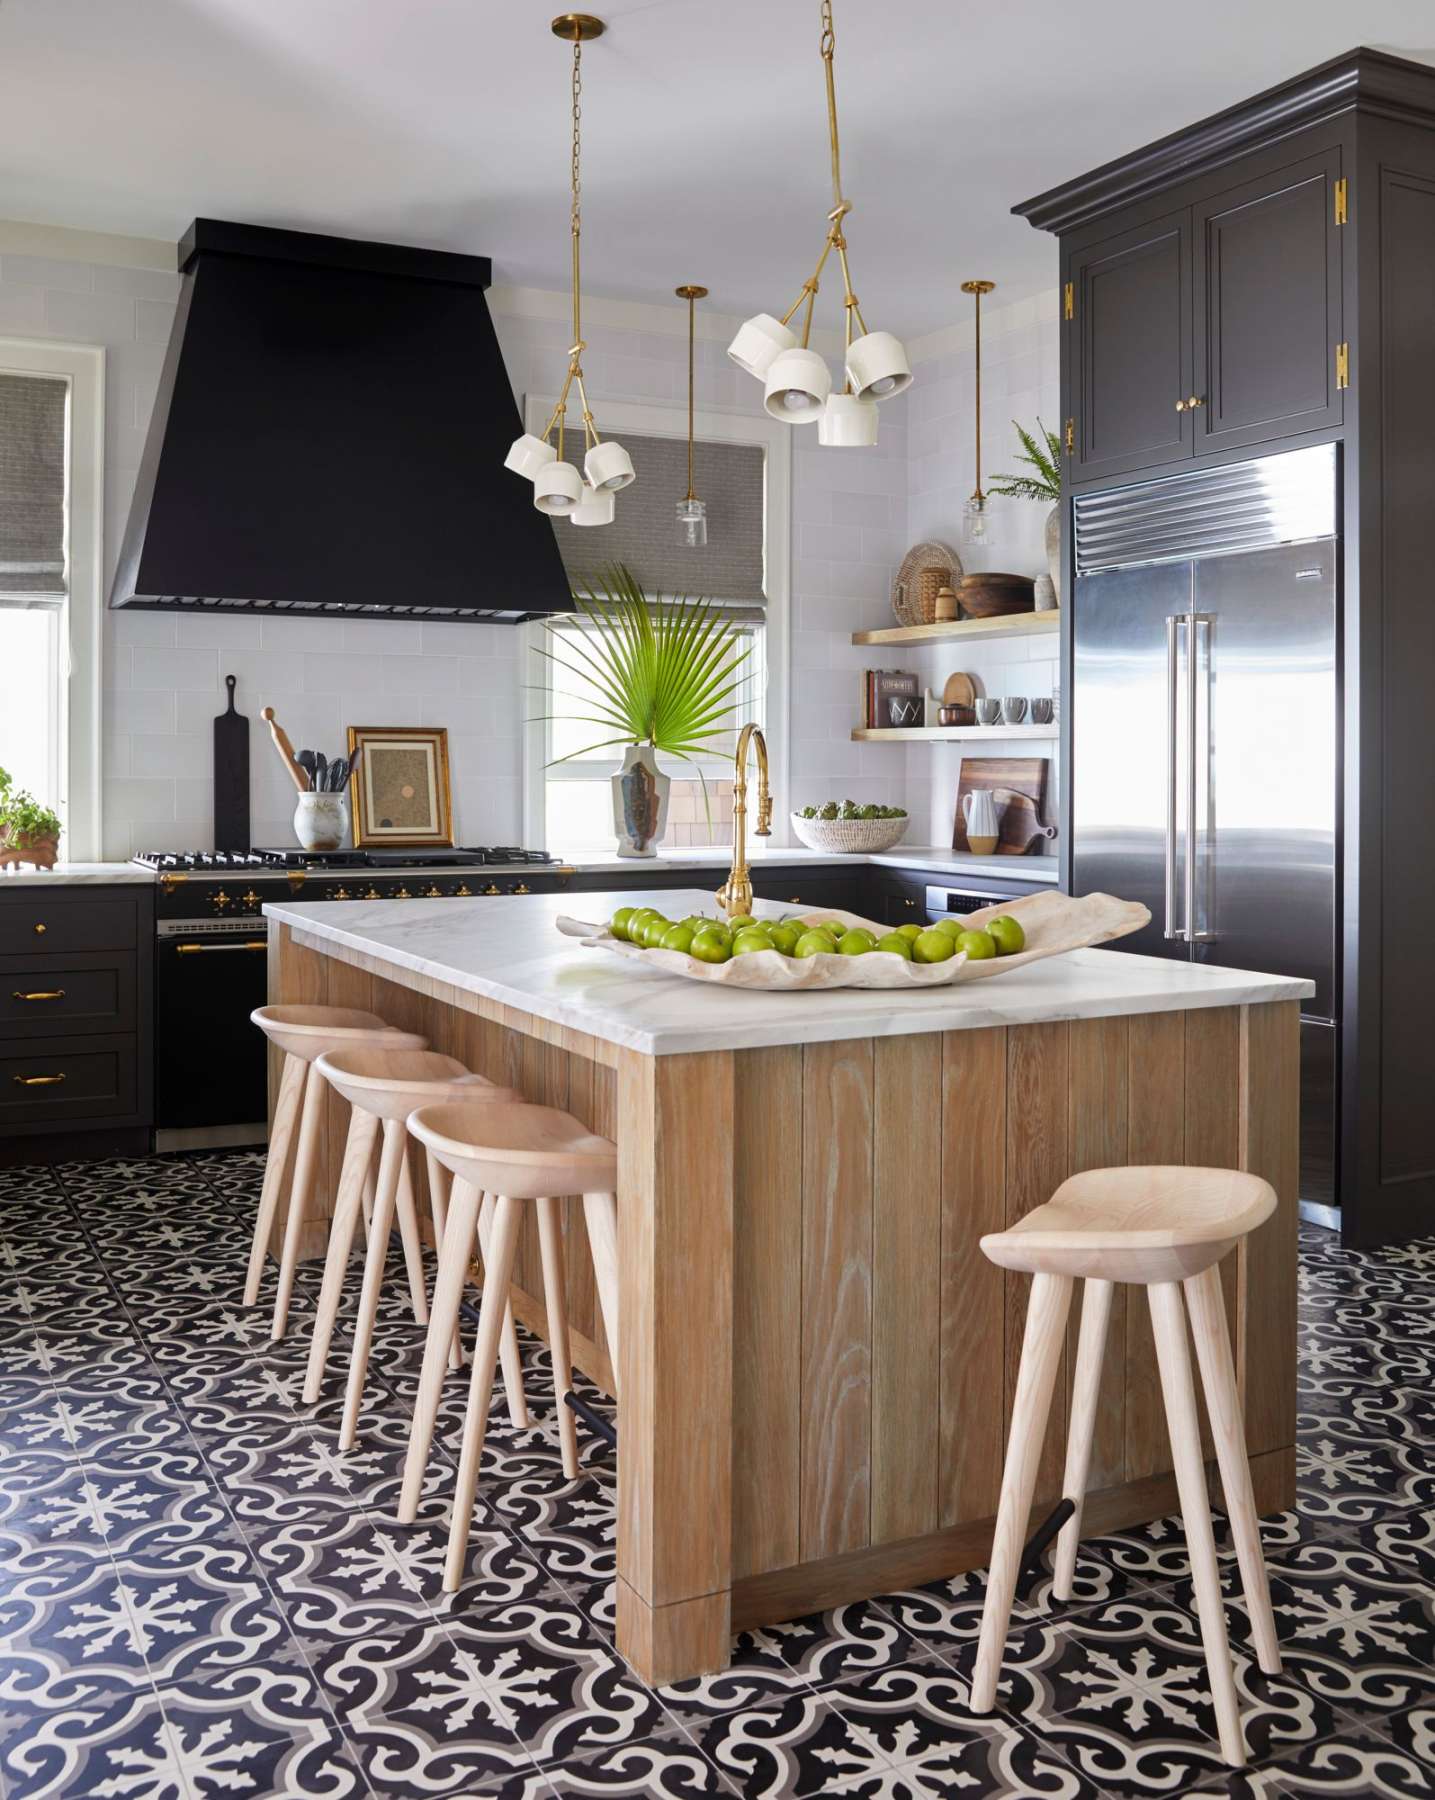 Kitchen Floor Tile Ideas for Any Design Aesthetic